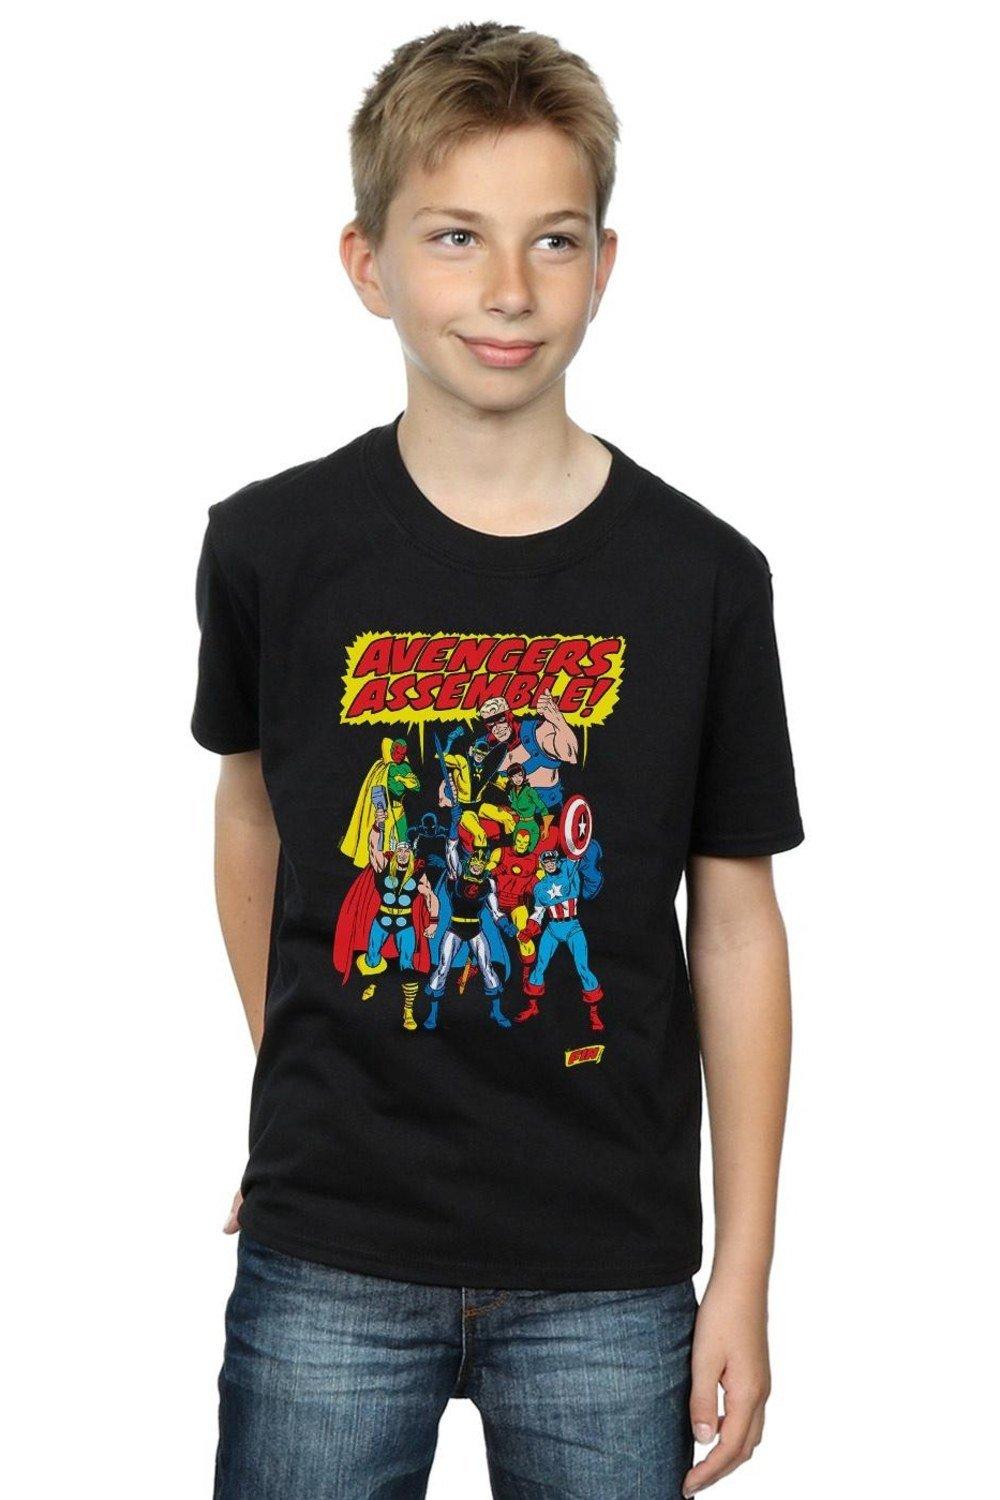 Avengers Assemble T-Shirt